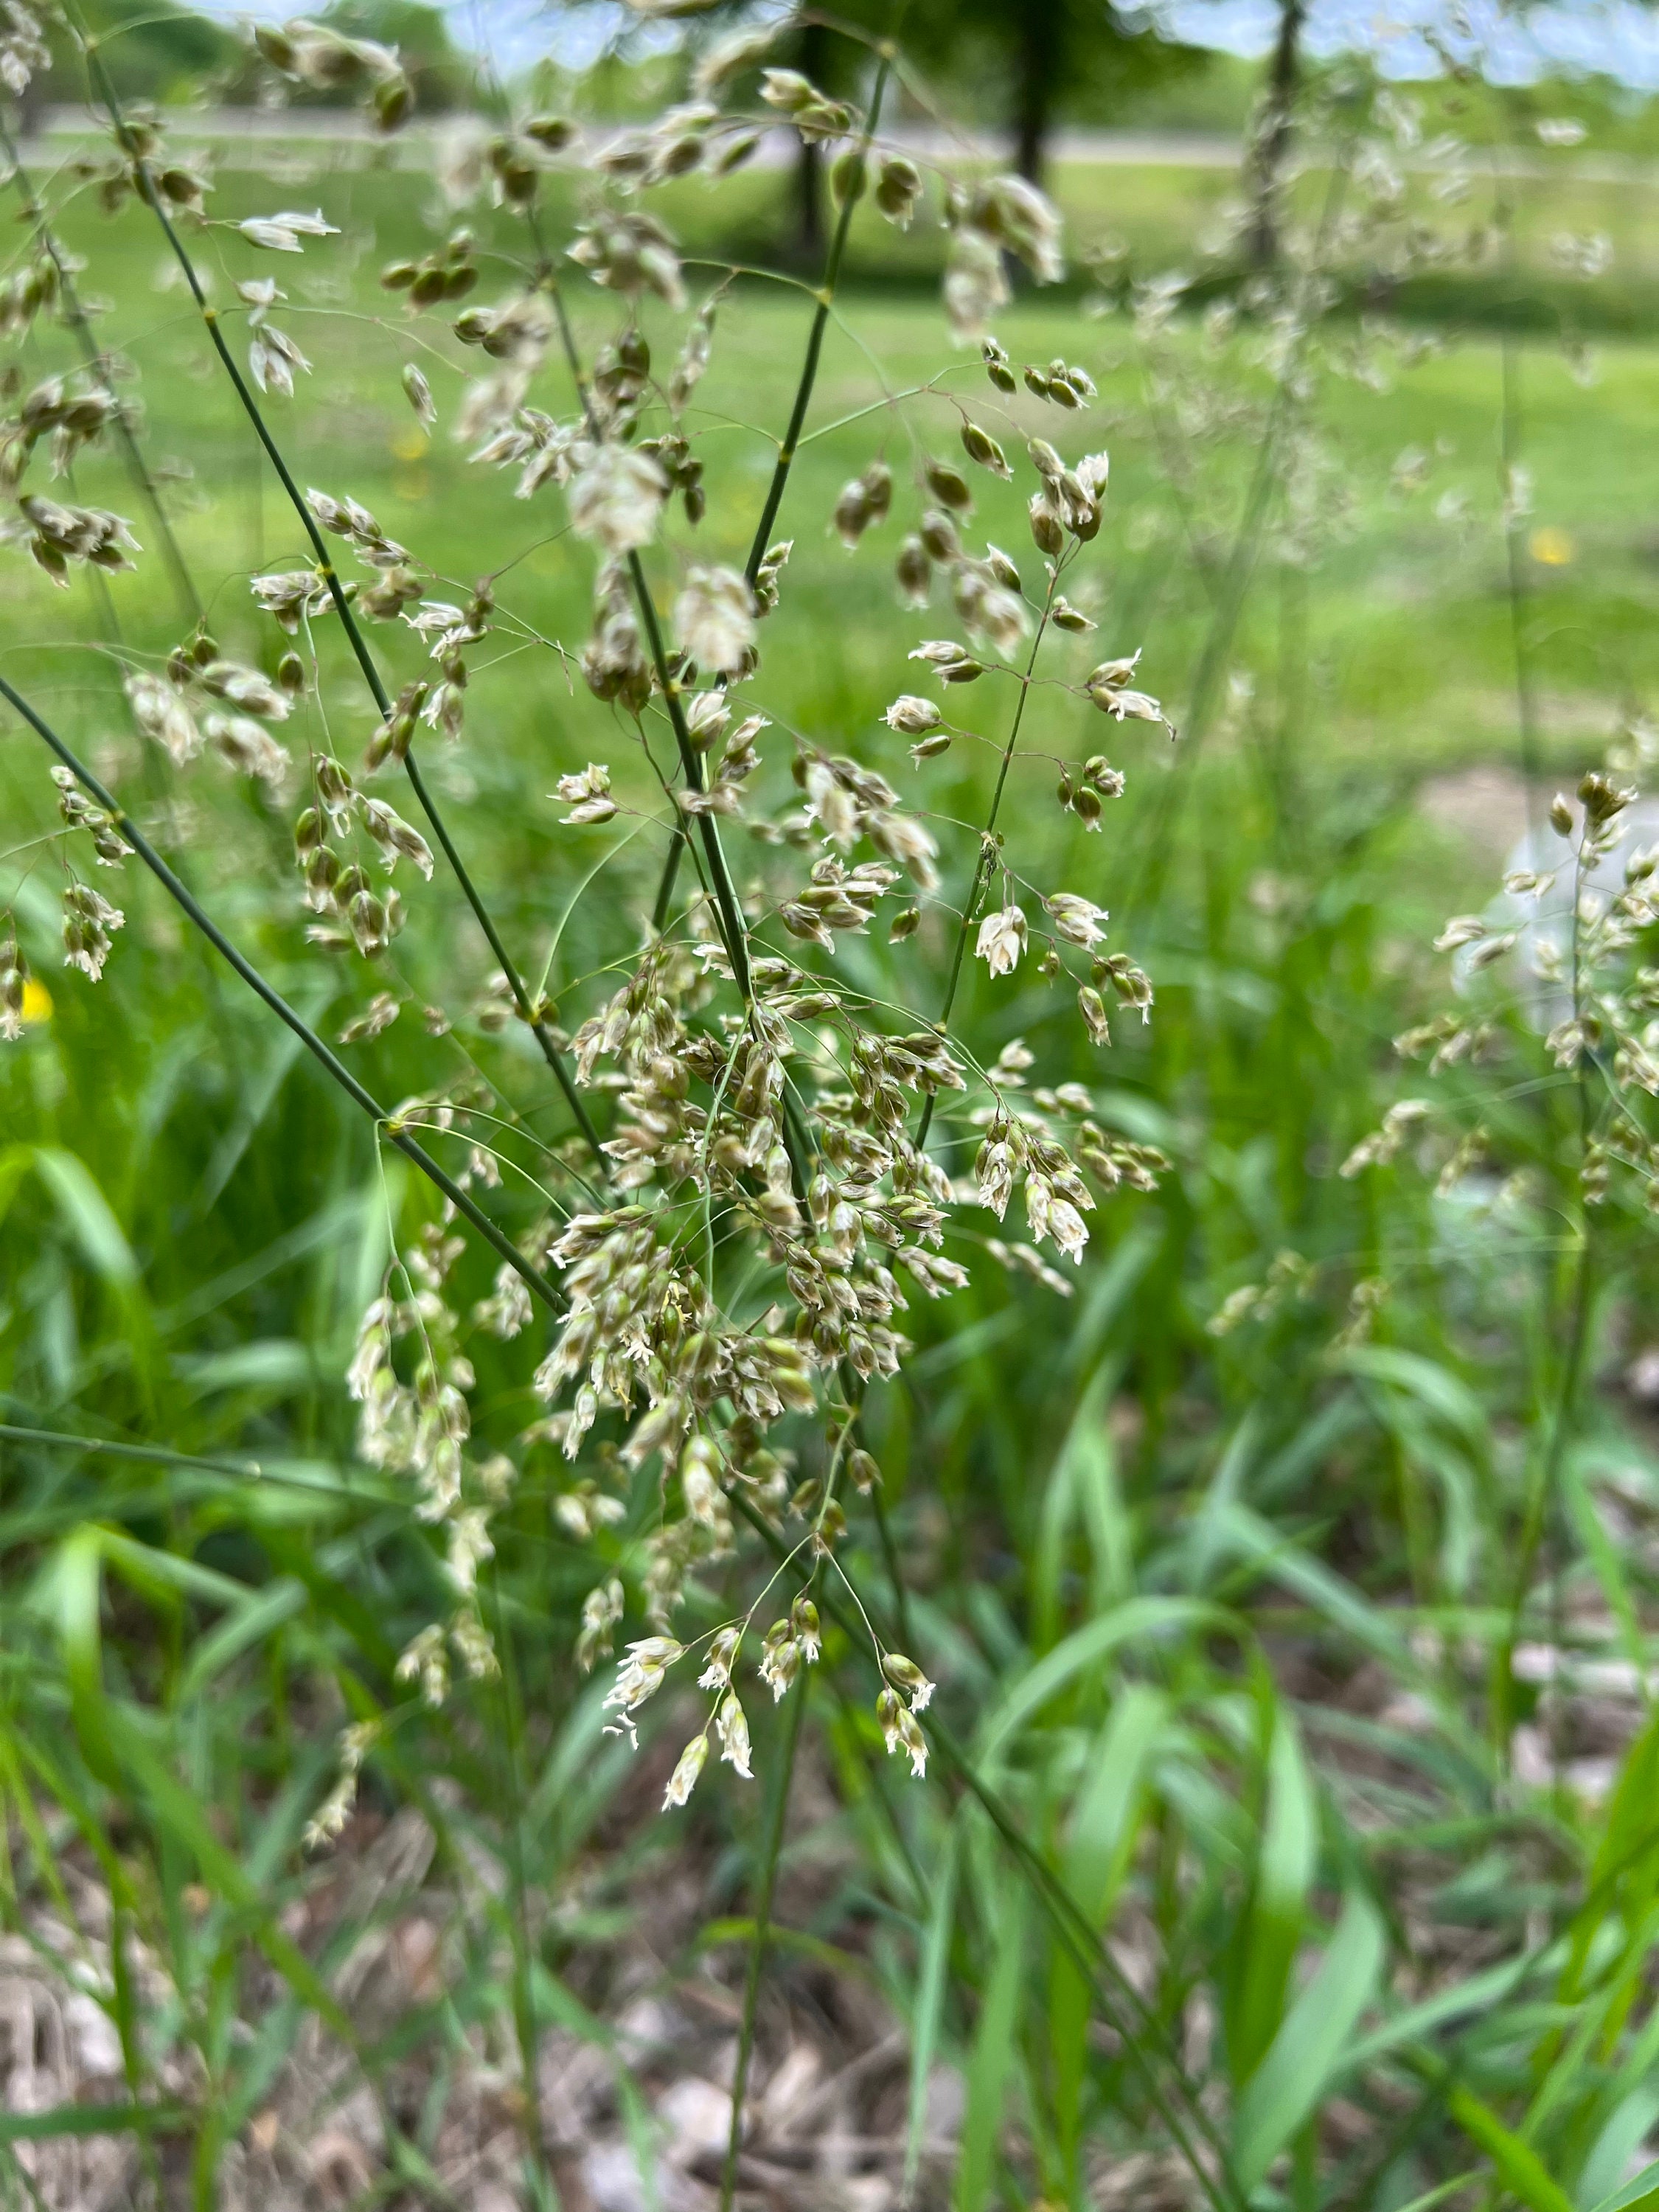 Sweetgrass Herb Plant, Hierochloe odorata